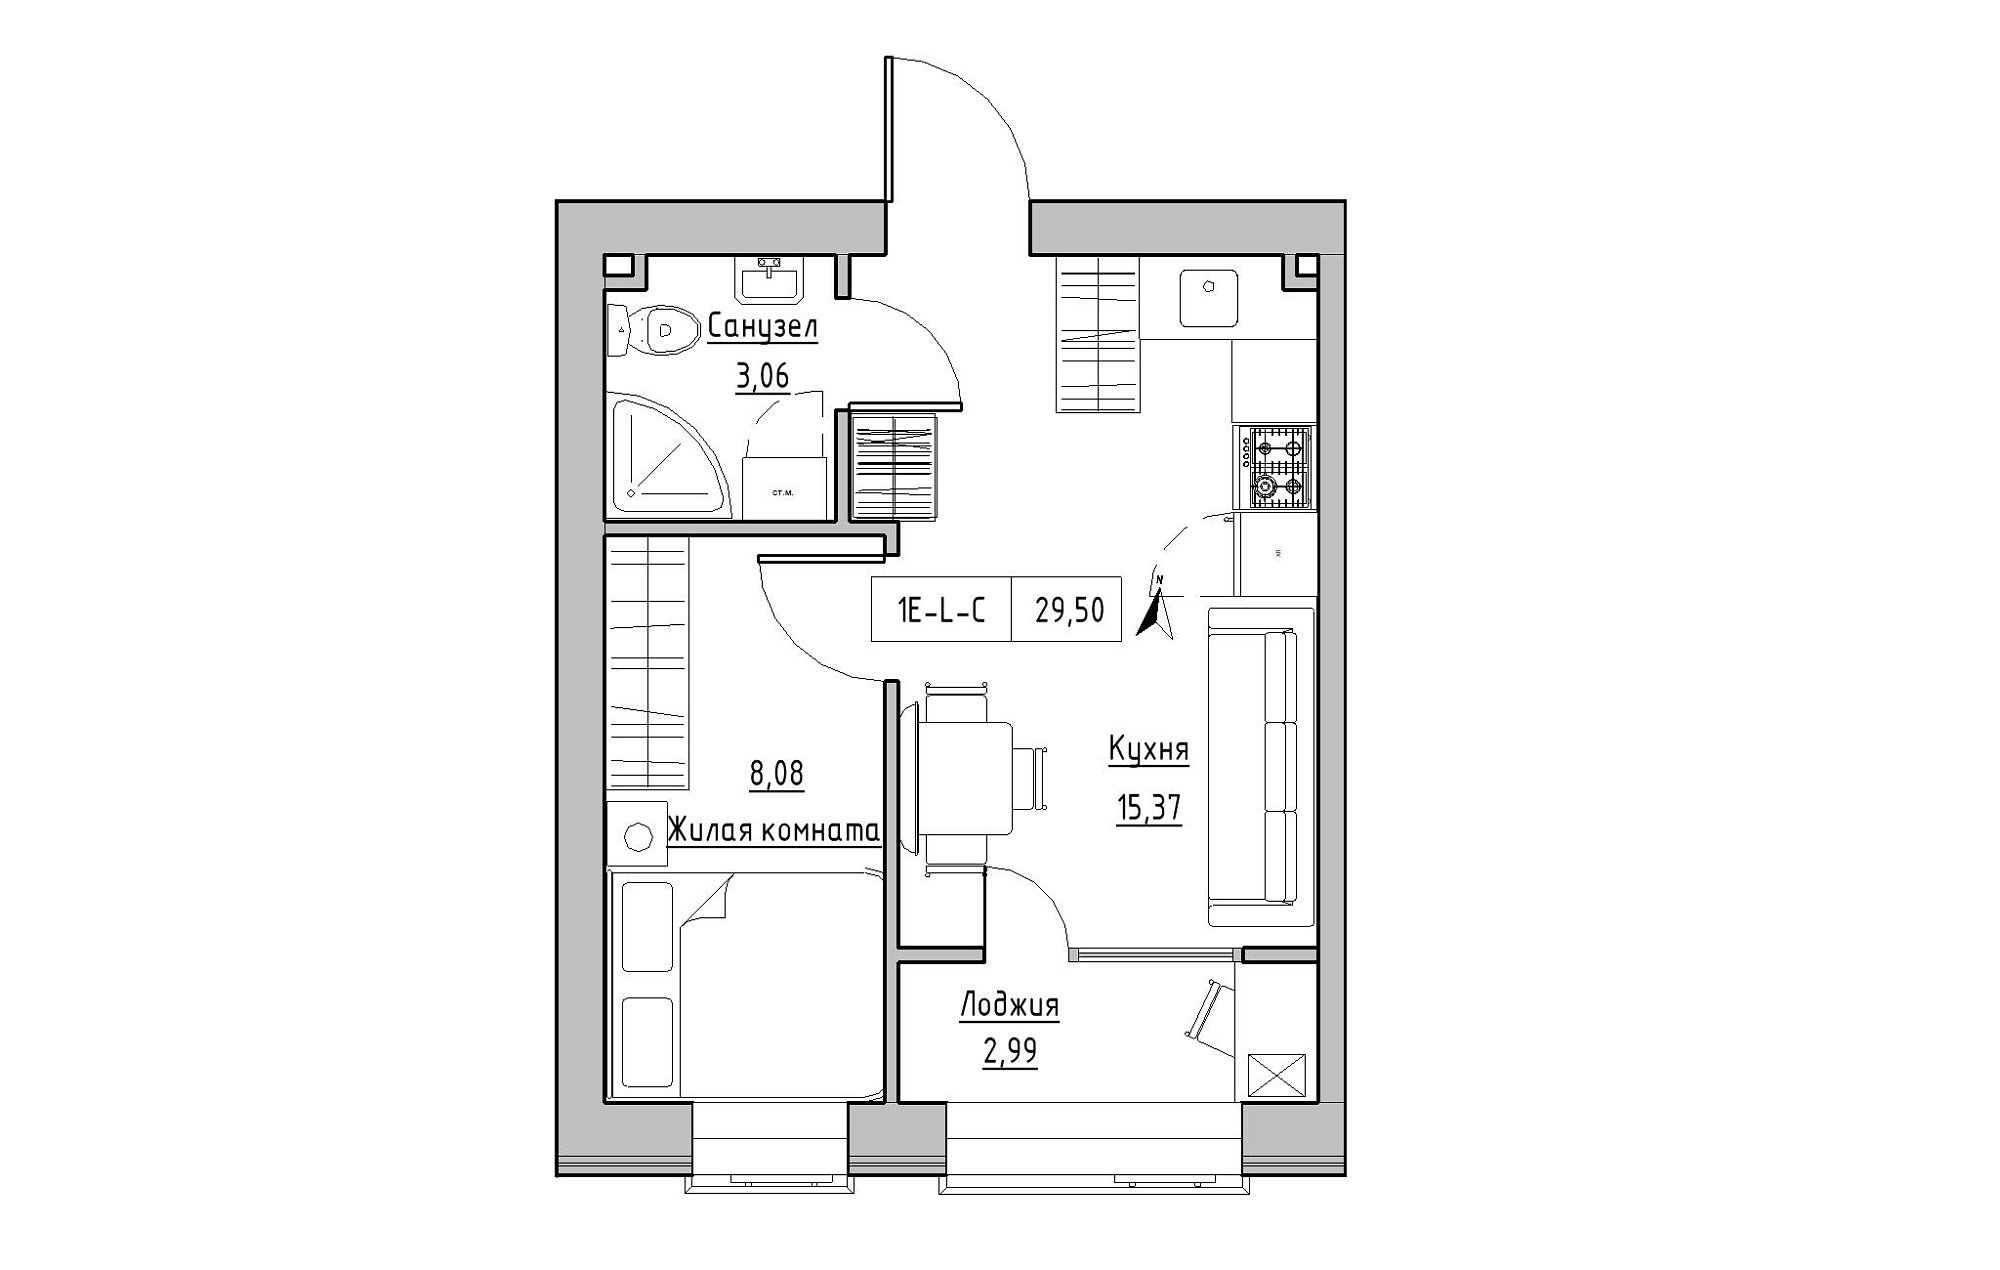 Планування 1-к квартира площею 29.5м2, KS-019-02/0010.